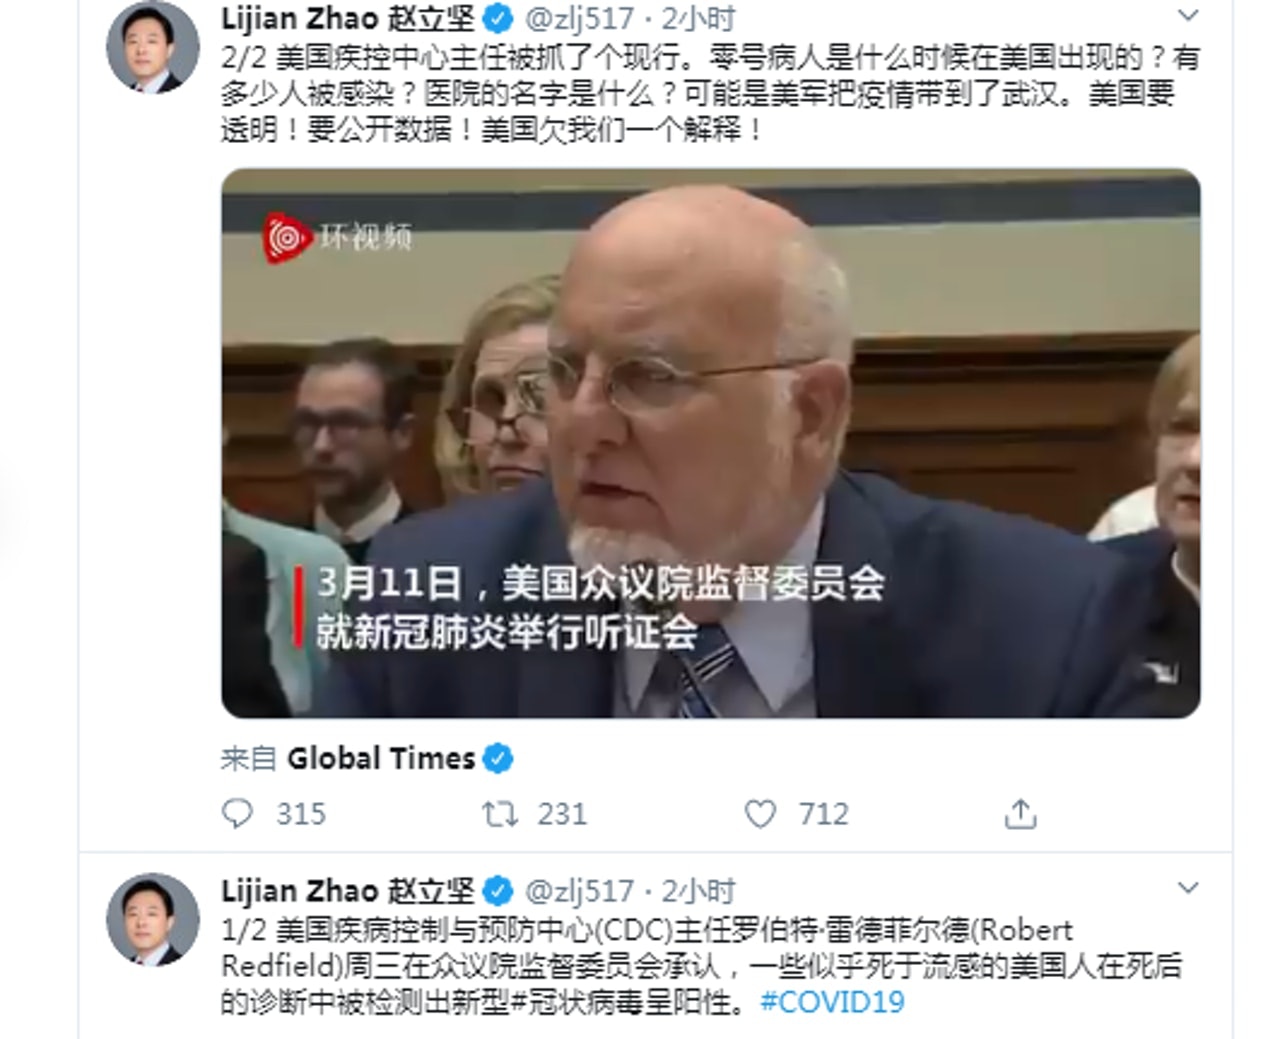 中國外交部發言人趙立堅3月12日於Twitter指出，「可能是美軍把疫情帶到了武漢」，「美國欠我們一個解釋」。(Twitter截圖）